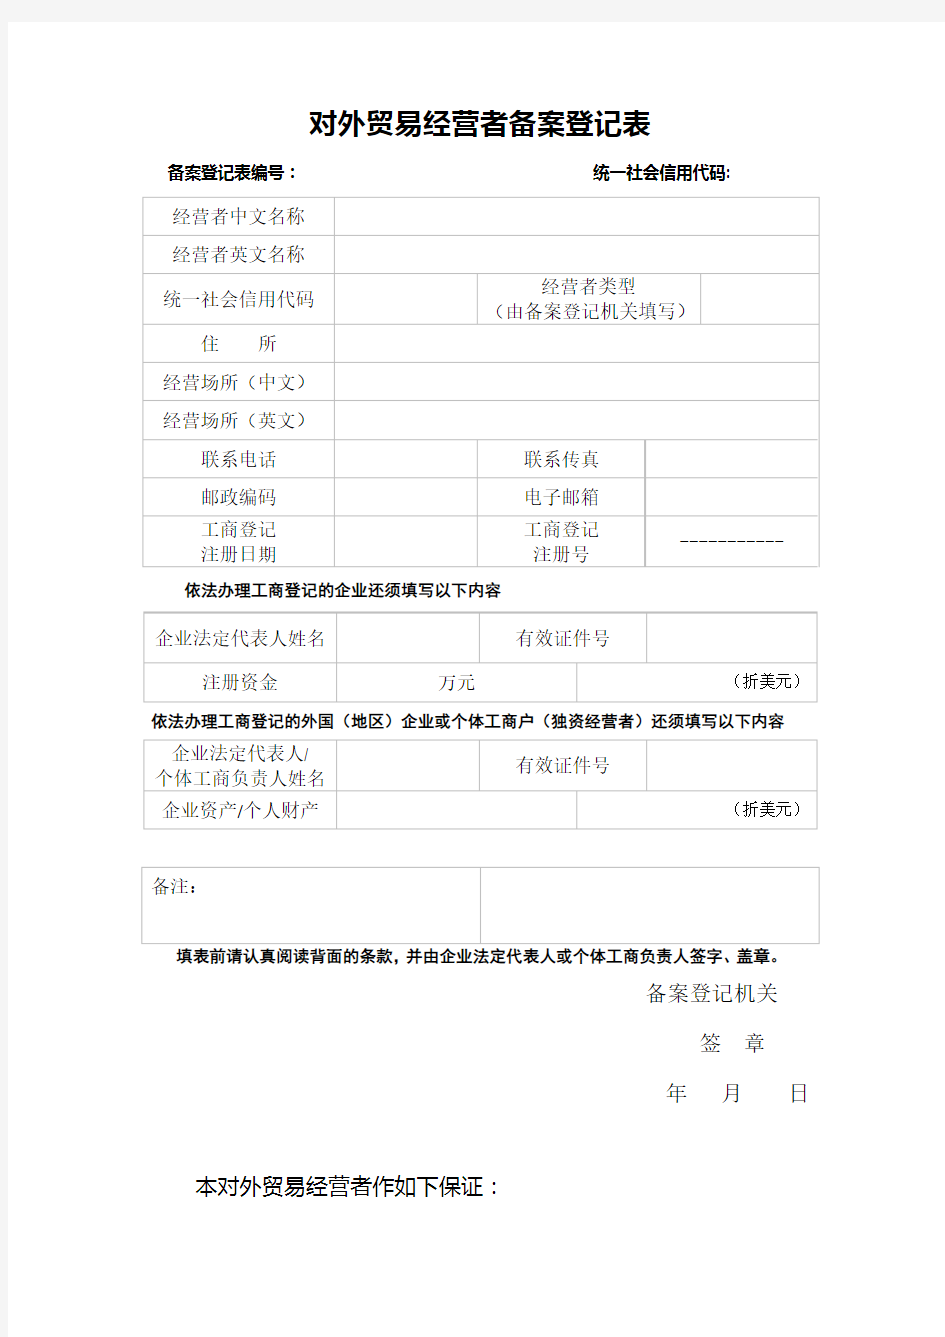 对外贸易经营者备案登记表(空表)